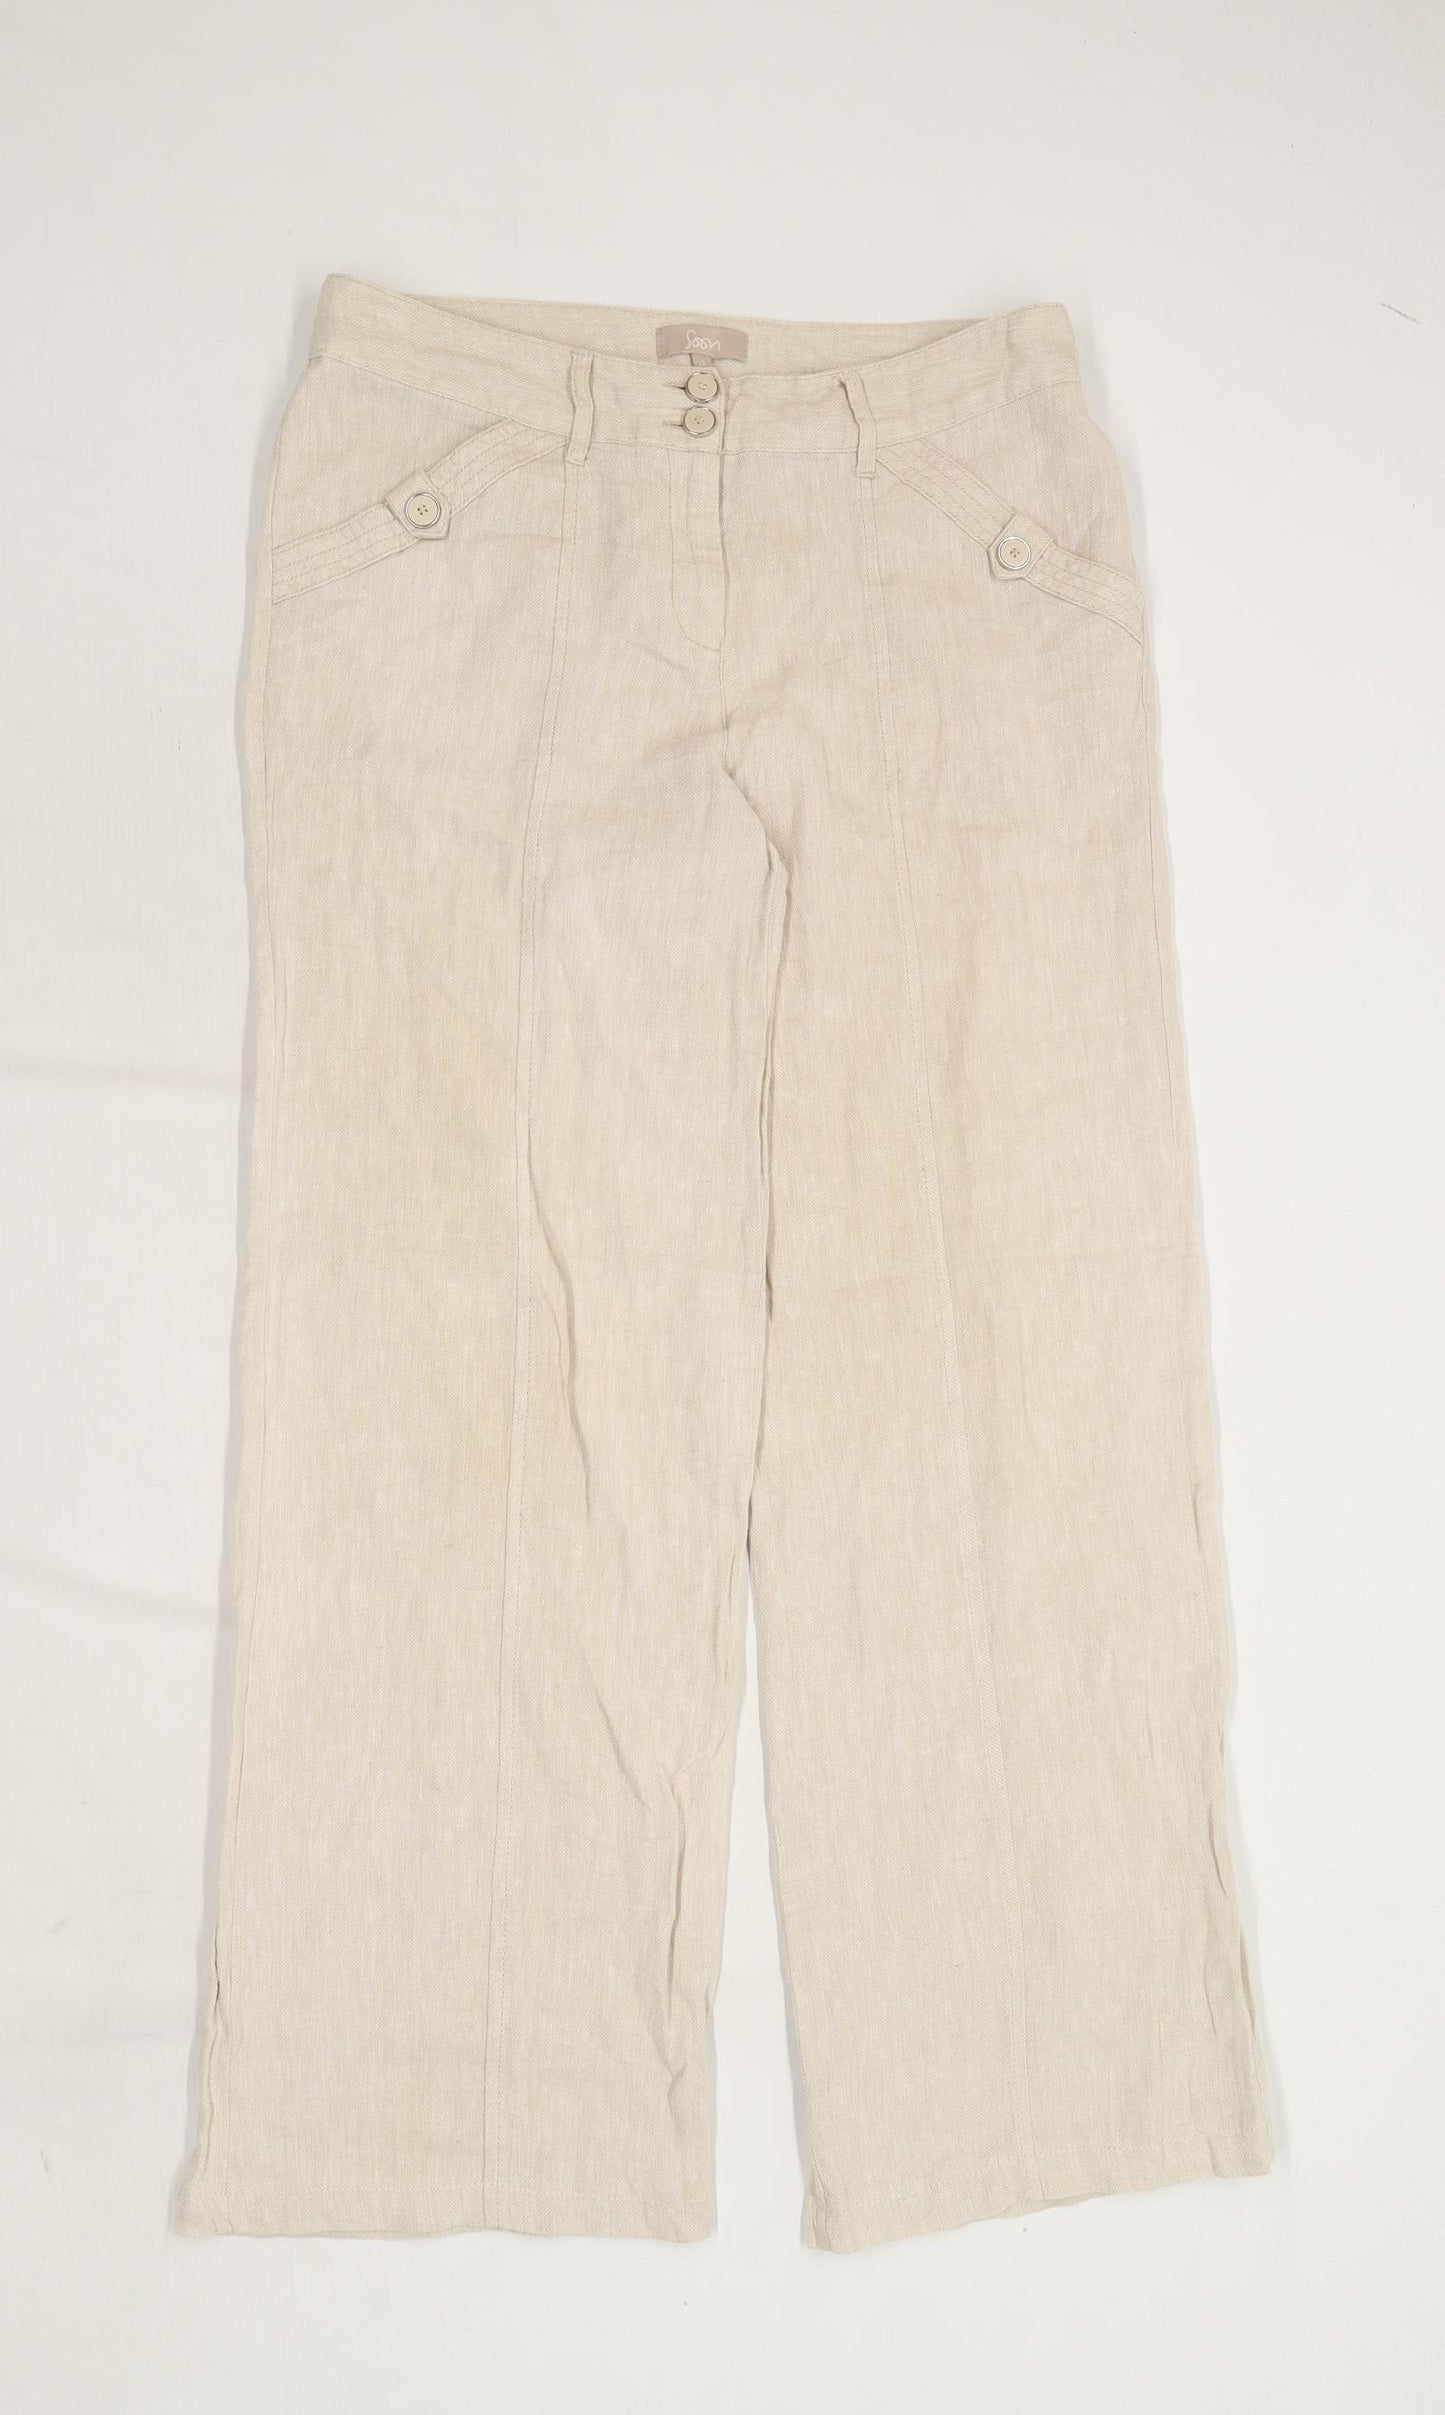 Womens Soon Beige Linen Blend Trousers Size 12/L30